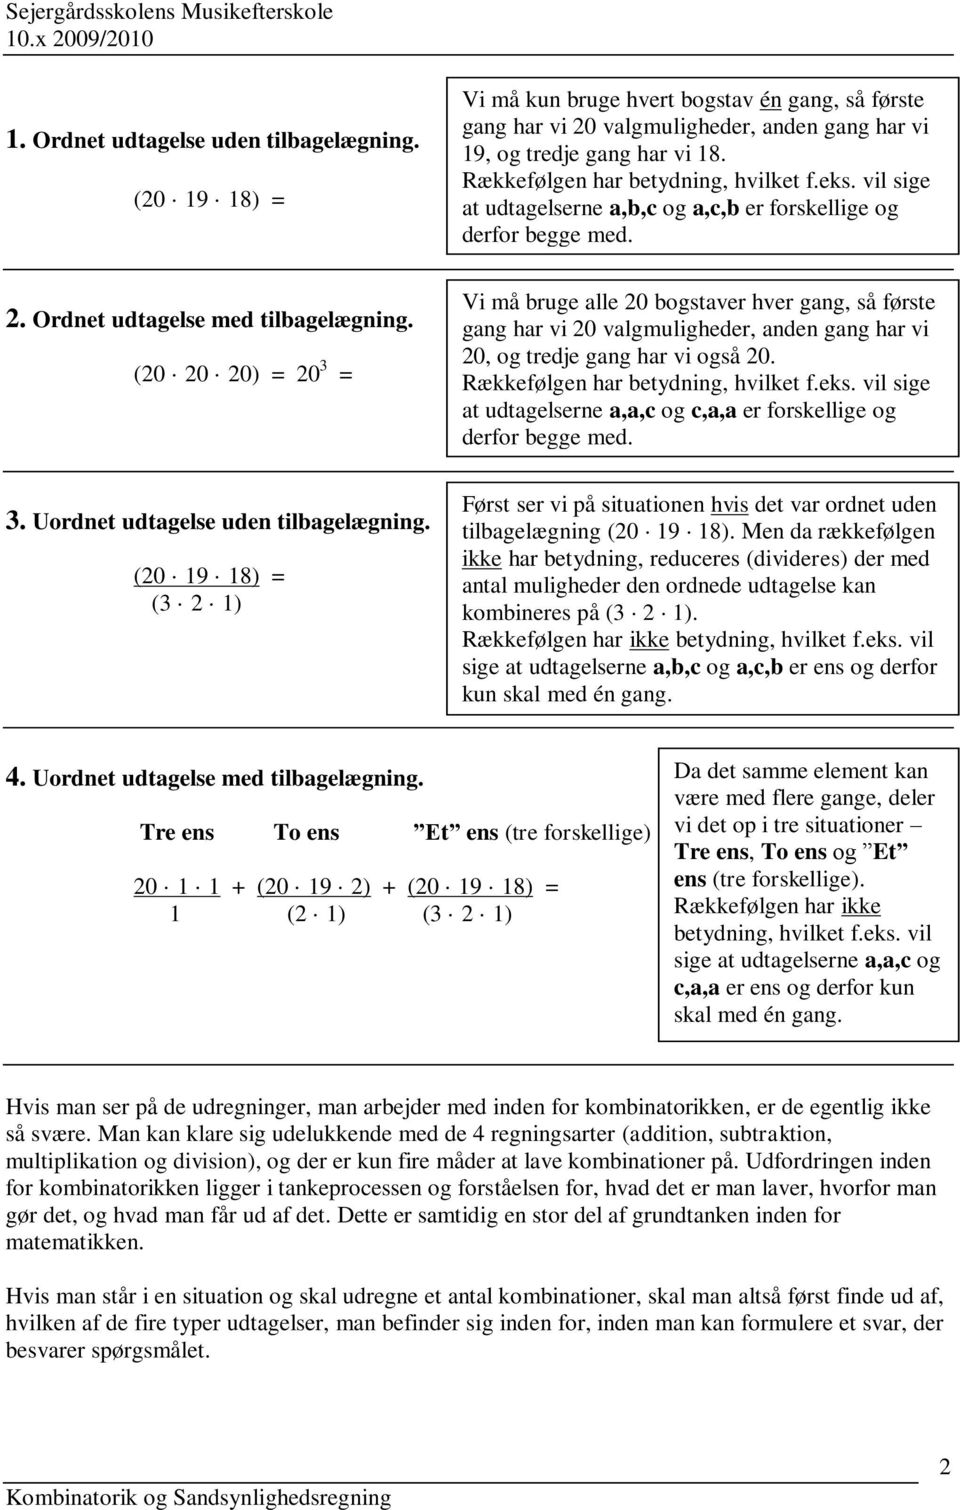 Kombinatorik og Sandsynlighedsregning - PDF Free Download